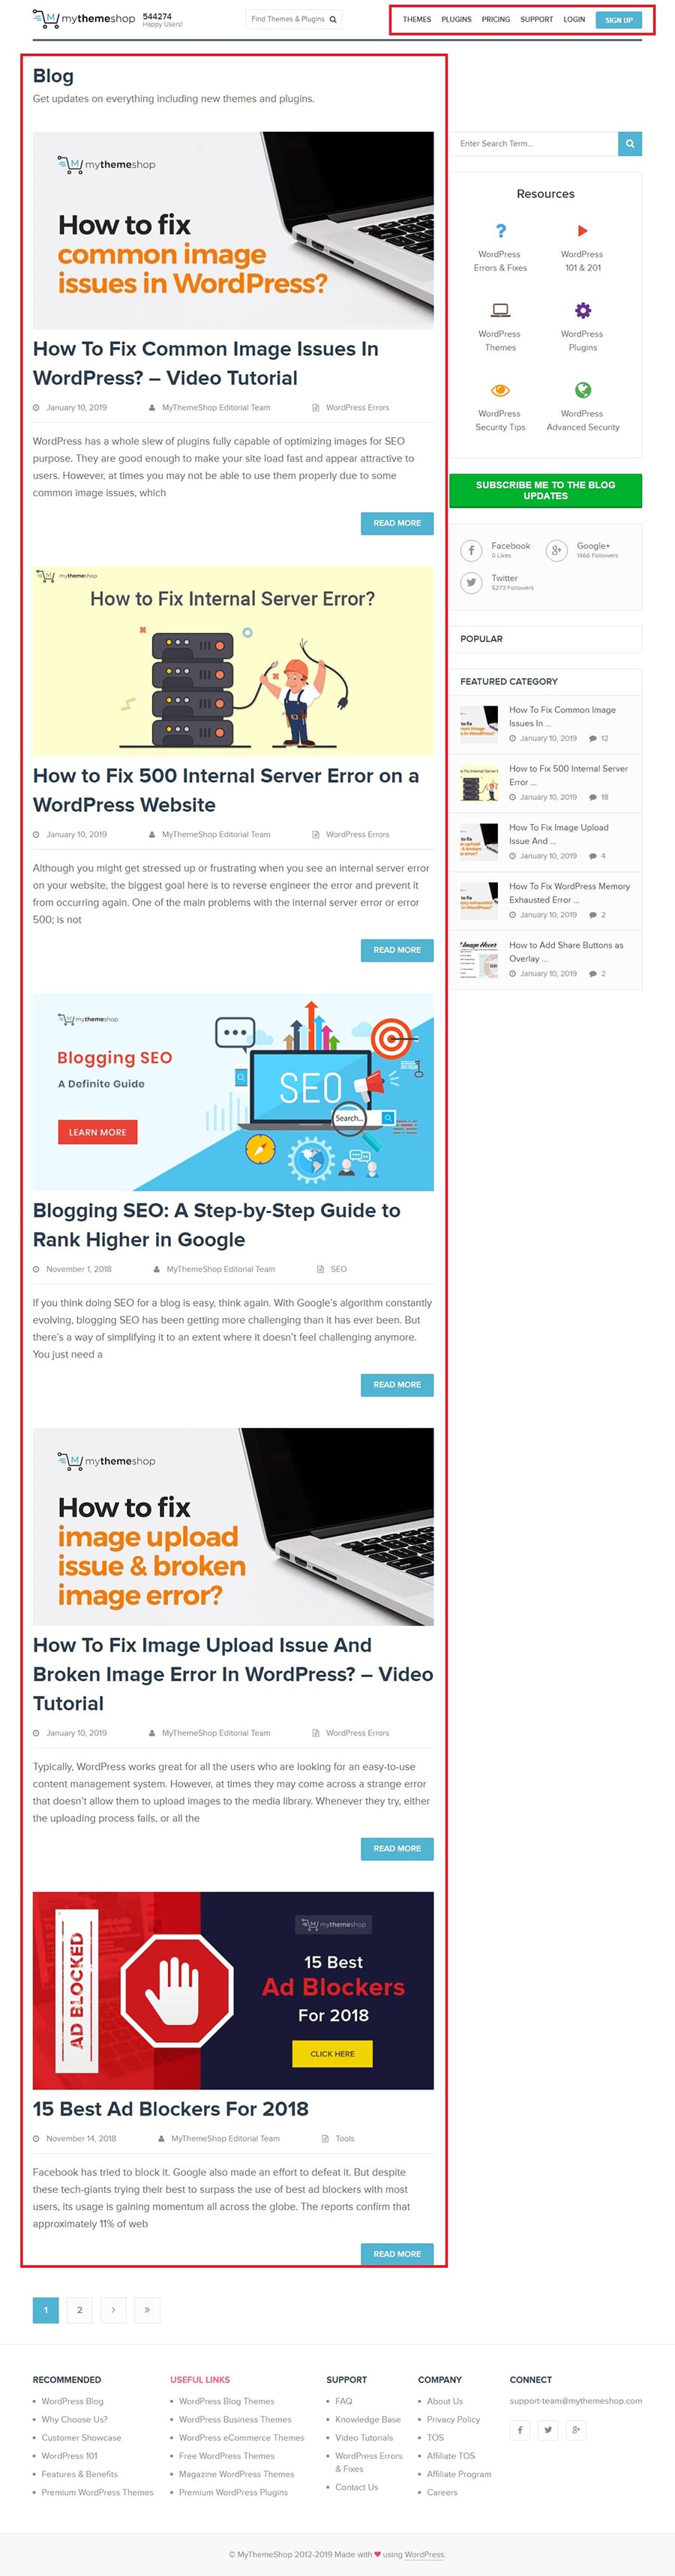 Blog vs Websites combine